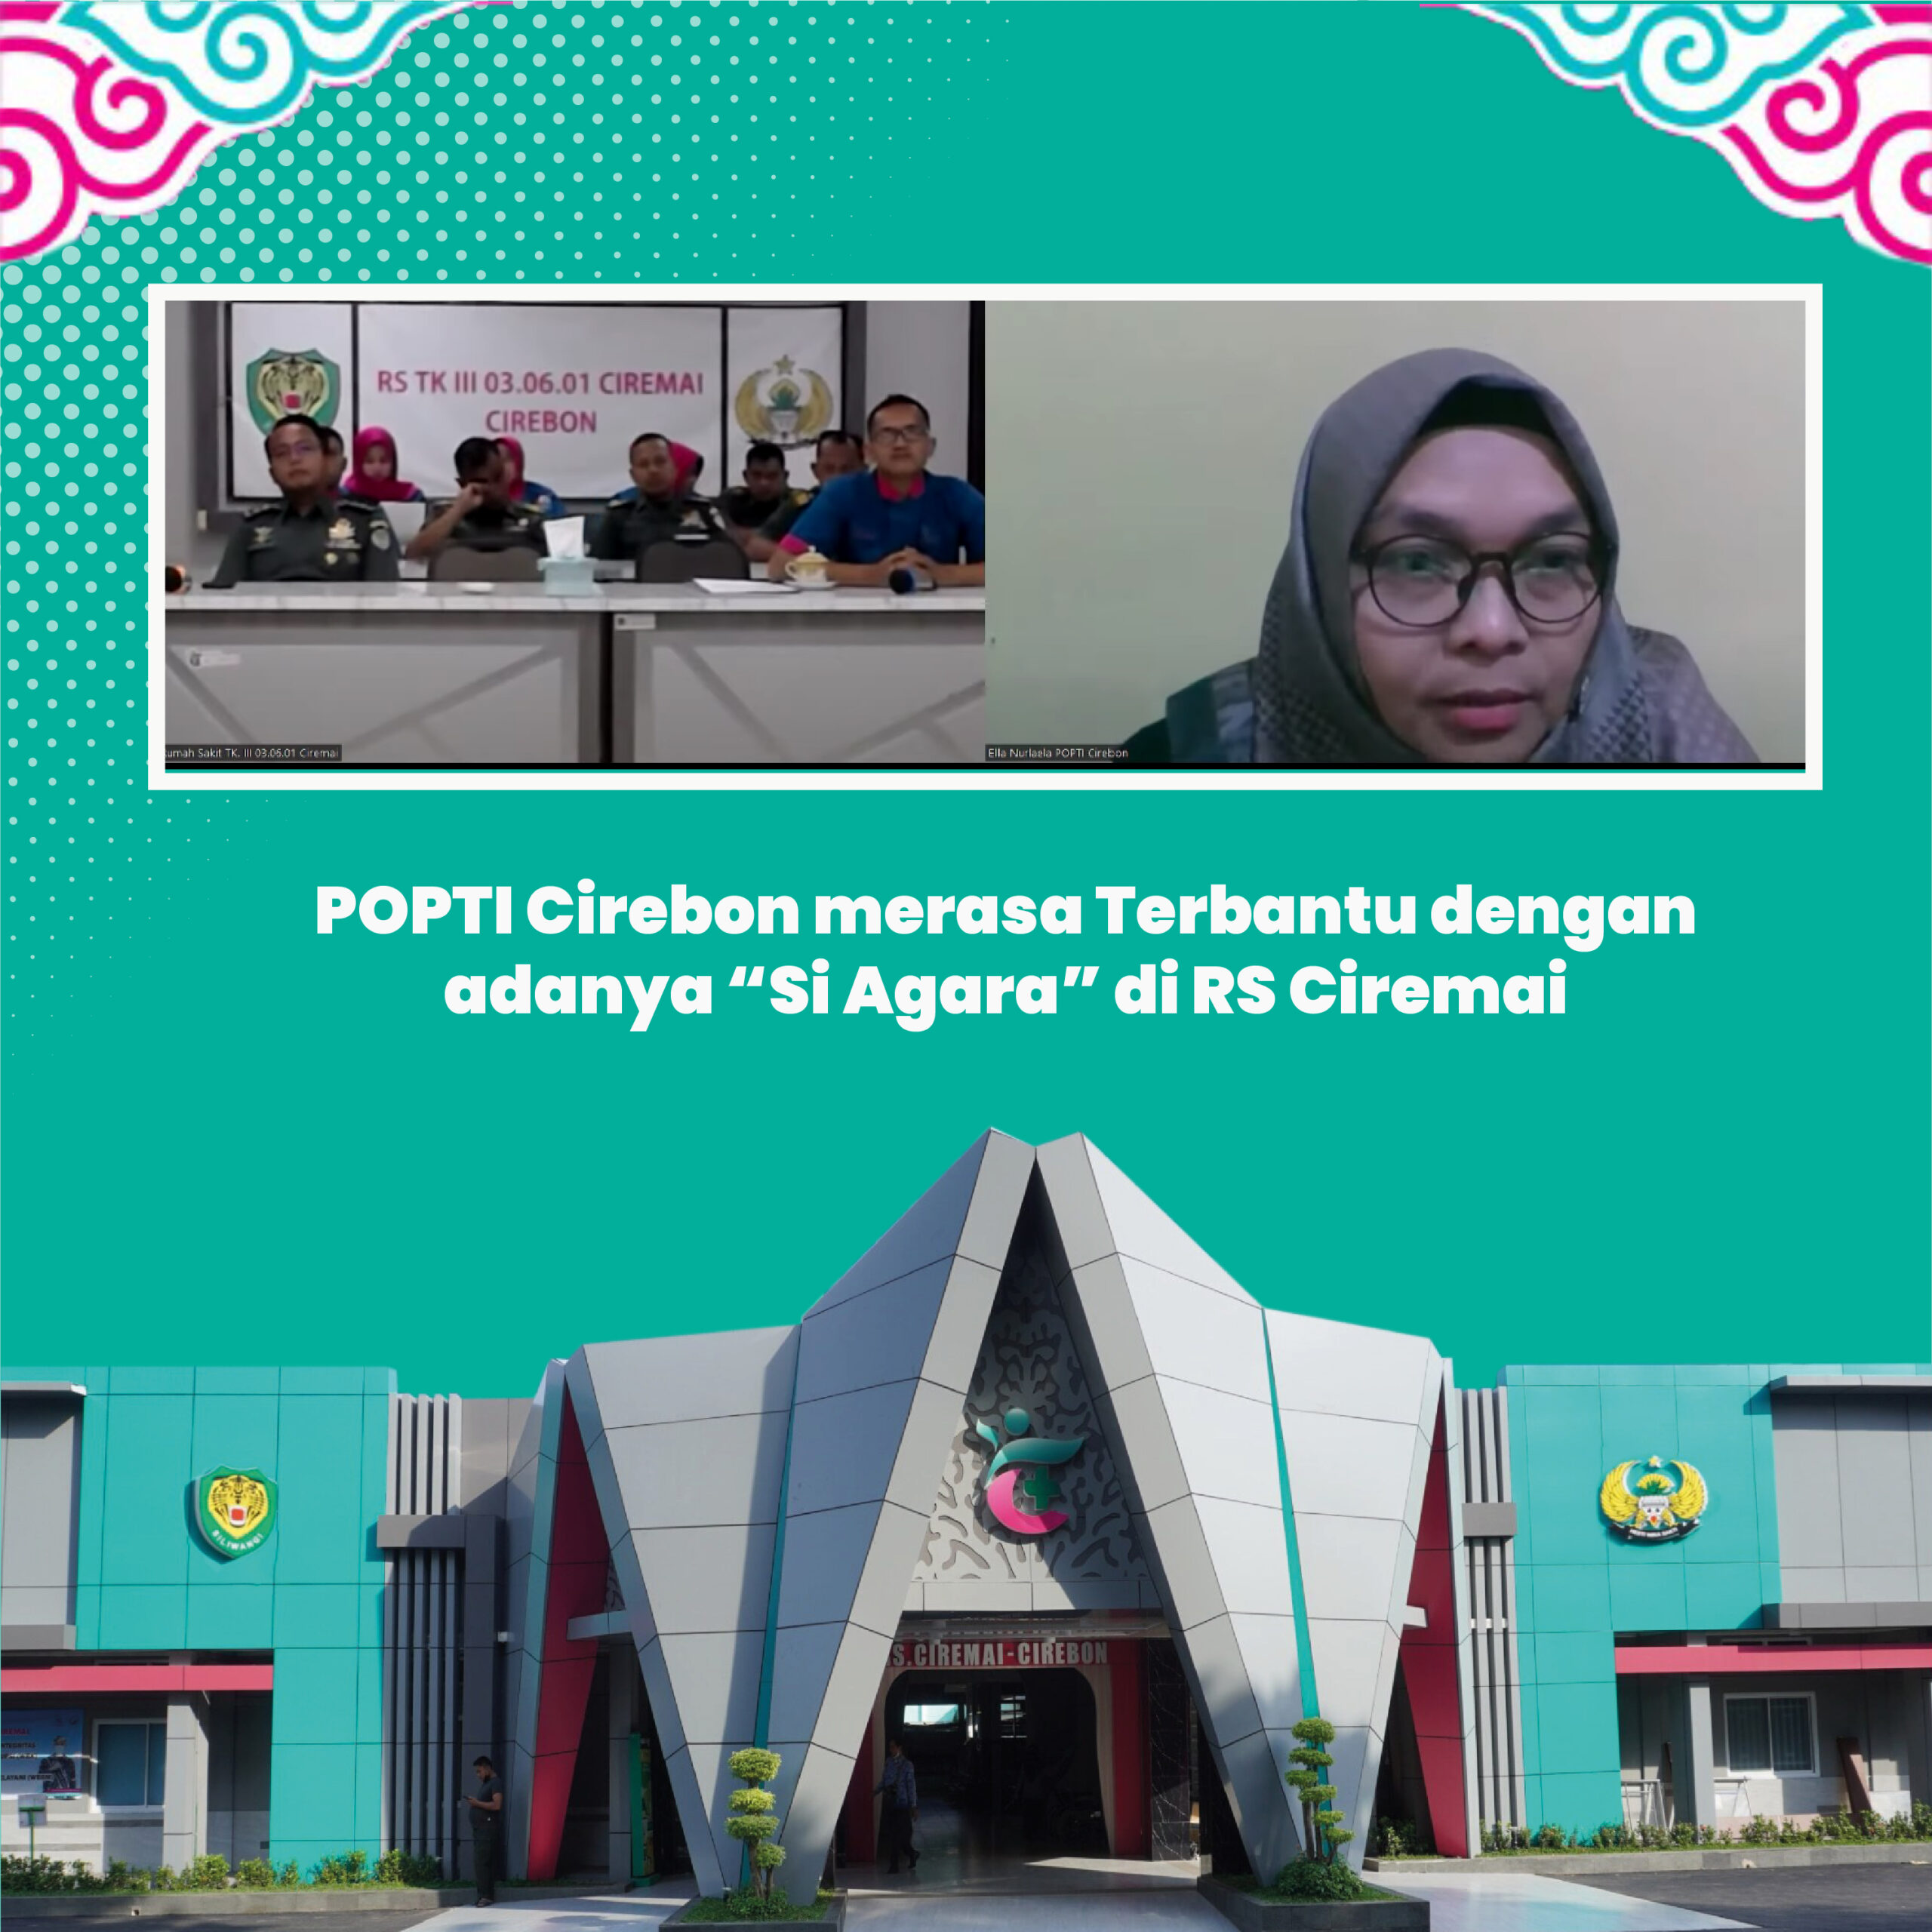 POPTI Cirebon merasa Terbantu dengan adanya “Si Agara” di RS Ciremai